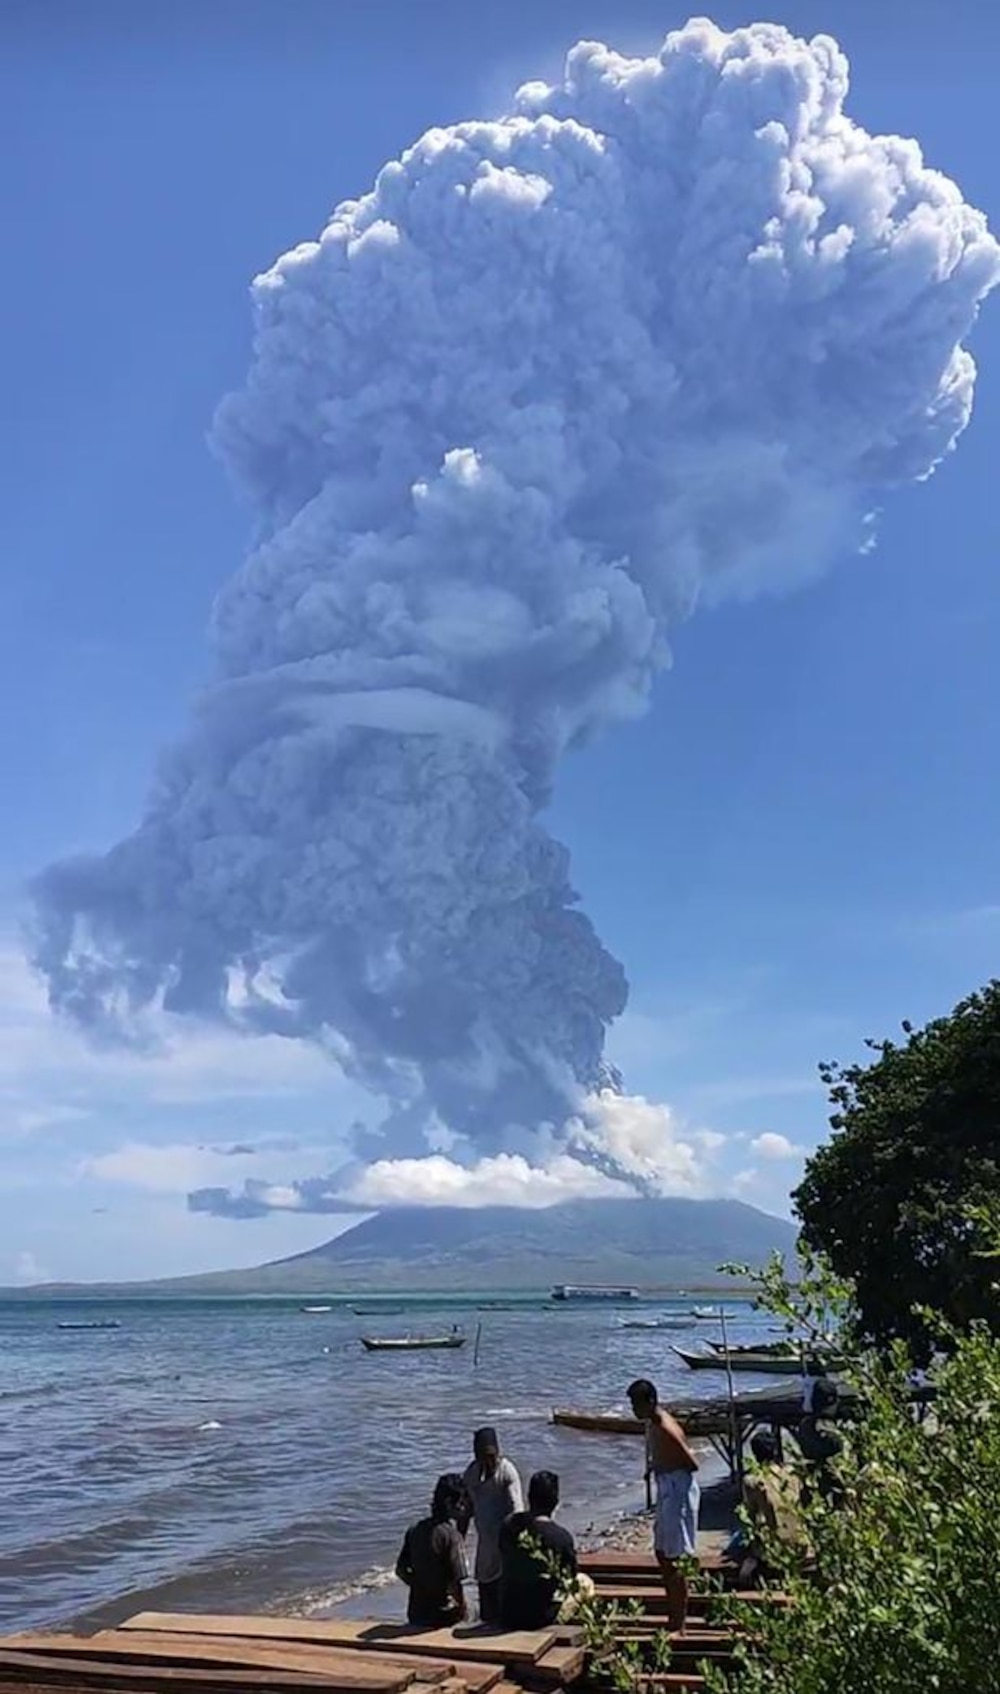 Indonesia: Núi lửa phun khói bụi cao tới 4 km, 2.700 cư dân nháo nhào tìm nơi trú ẩn - Ảnh 1